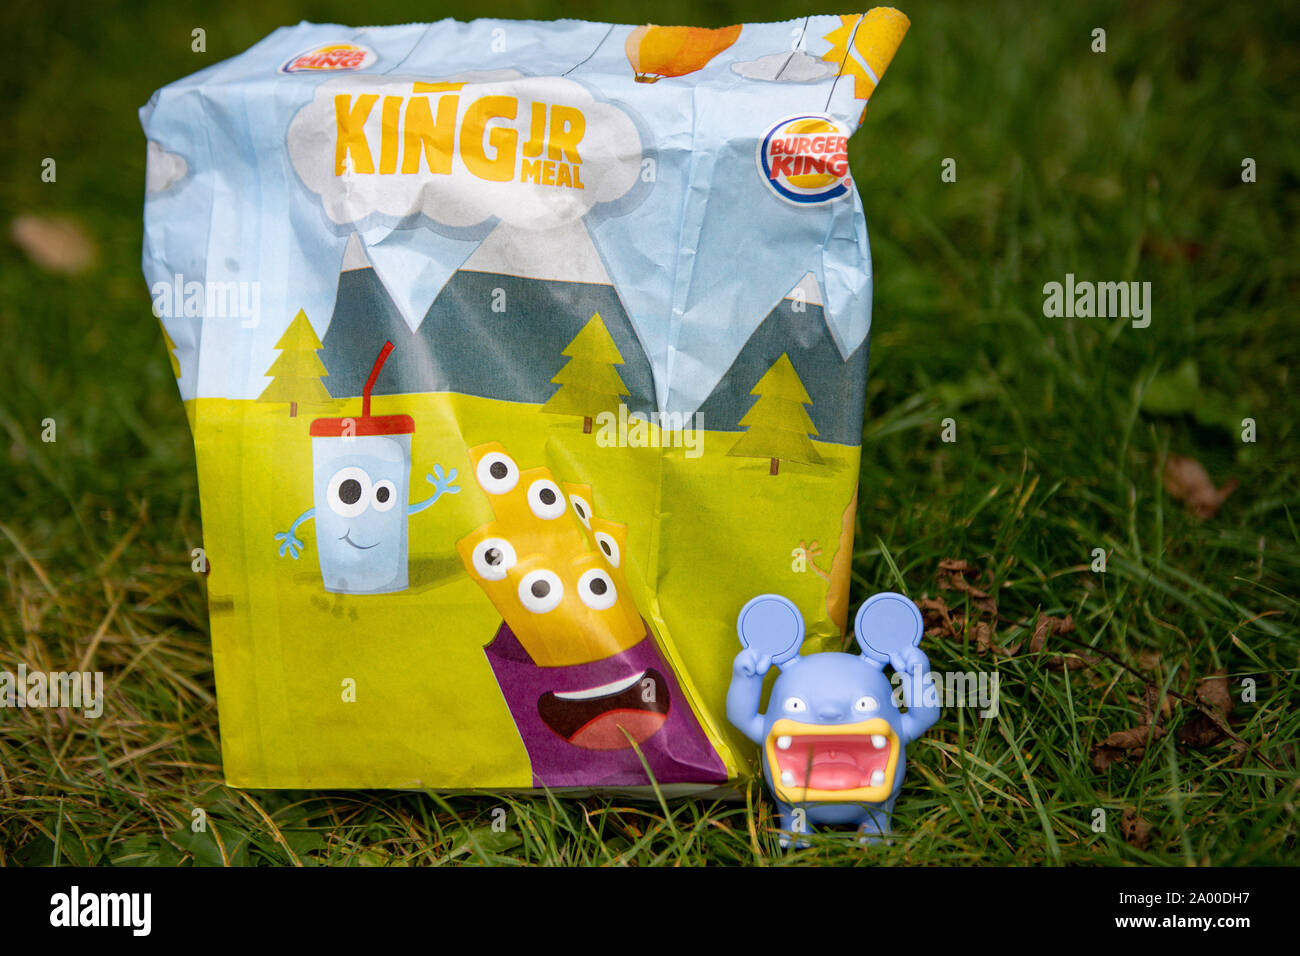 Un Burger King Jouet de l'un de leurs repas pour enfants. La chaîne de restauration rapide a annoncé qu'ils suppriment tous les jouets en plastique de son aire de repas servis au Royaume-Uni à partir de jeudi à économiser environ 320 tonnes de déchets par an. Banque D'Images